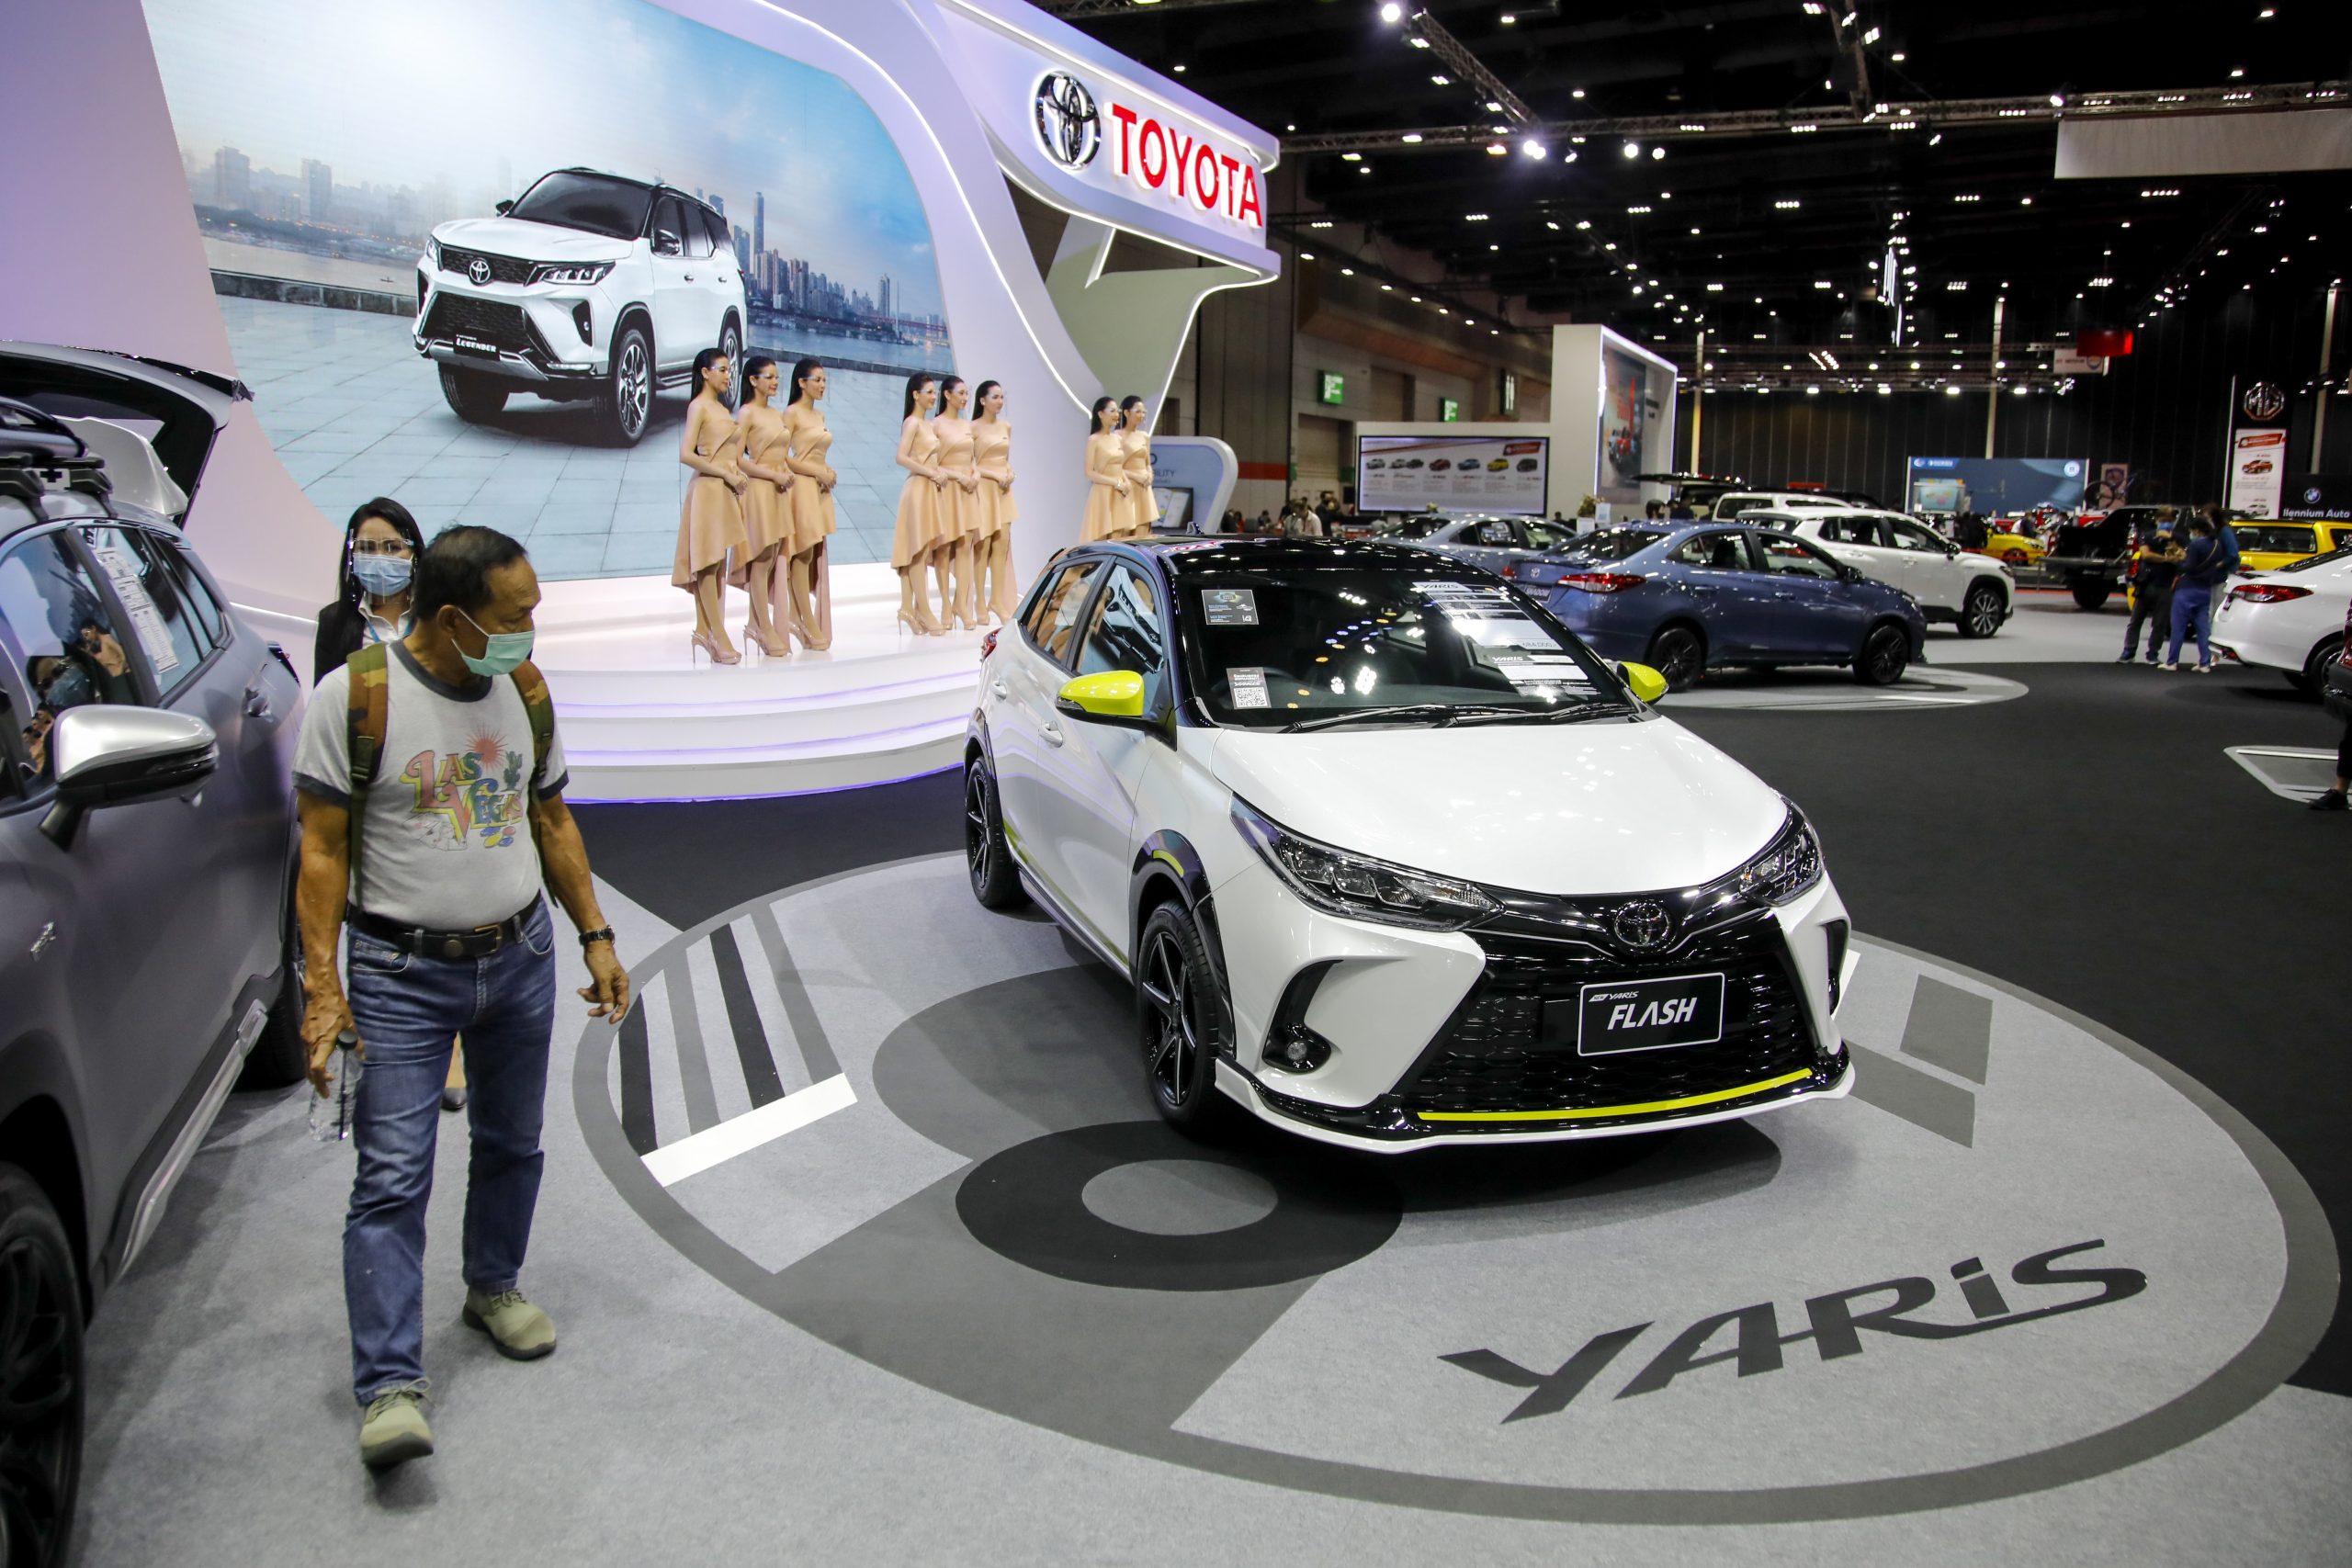 De elektrische Toyota Yaris tijdens een autoshow in de Thaise hoofdstad Bangkok in coronajaar 2020. Foto: EPA/DIEGO AZUBEL